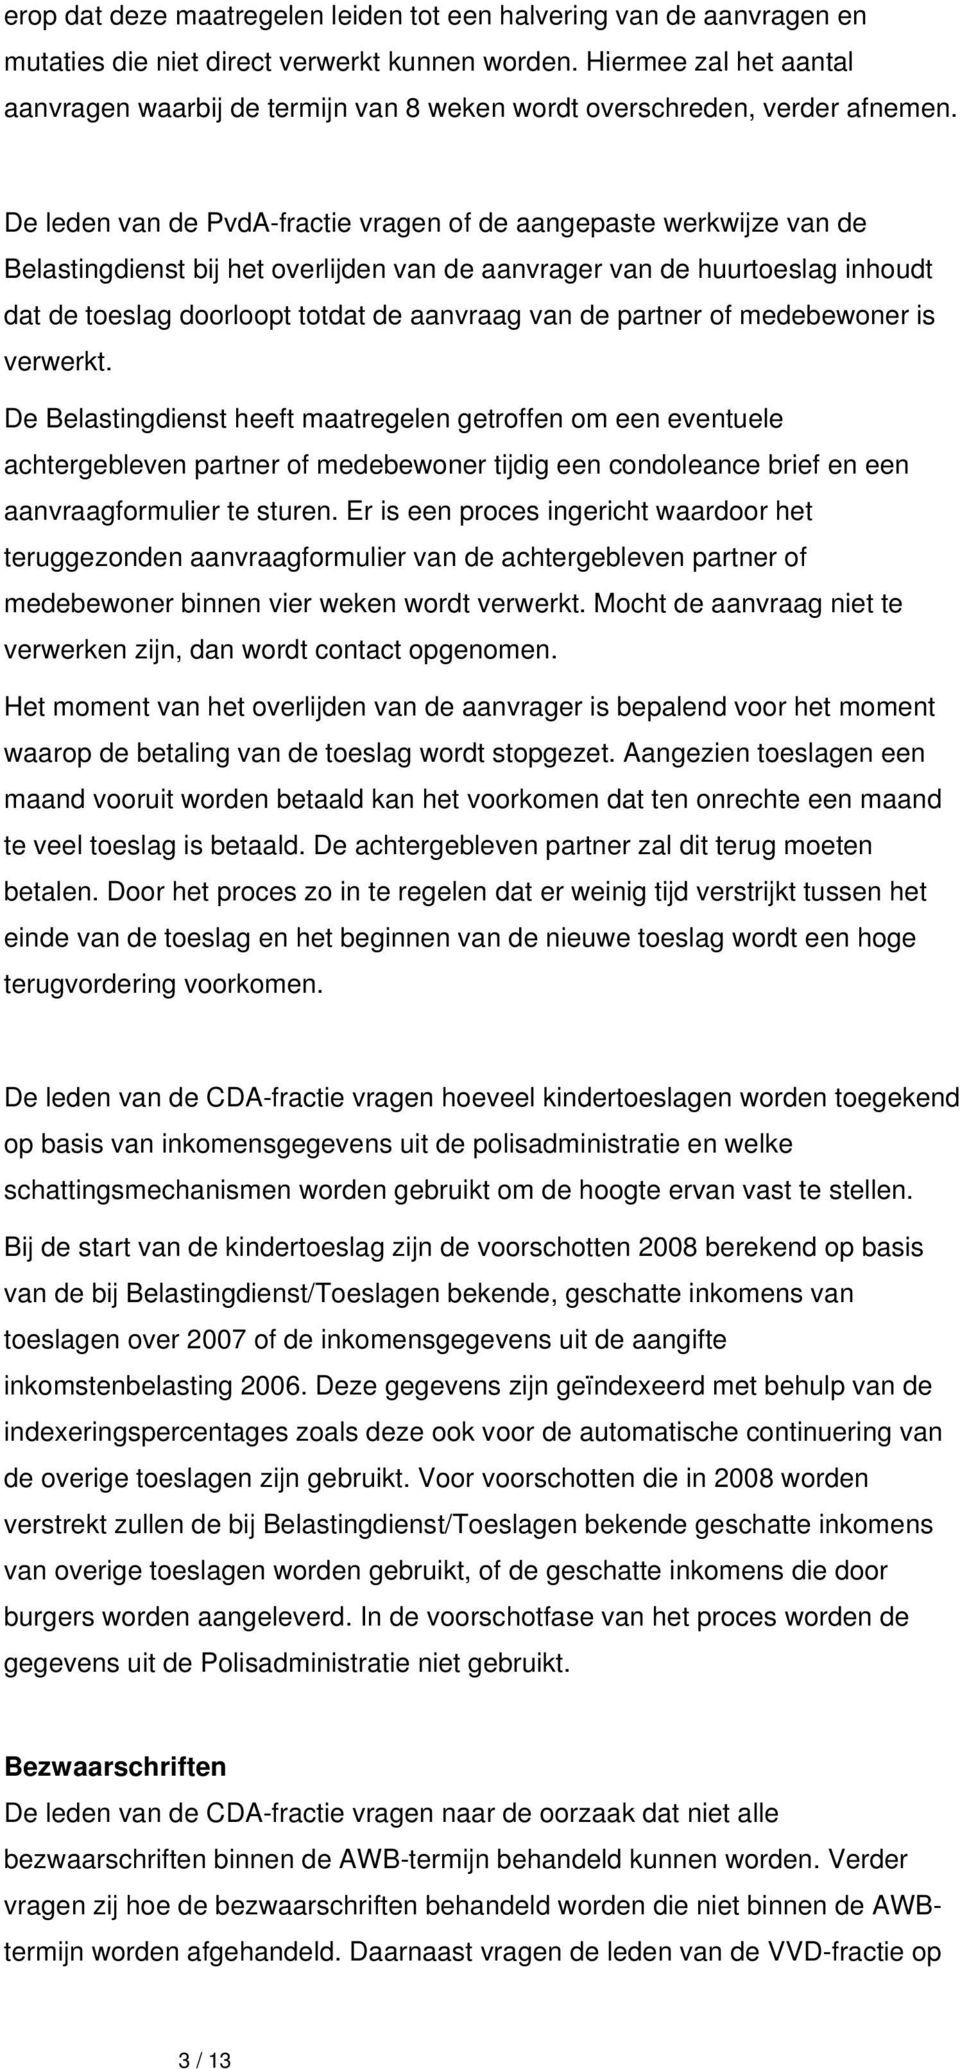 De leden van de PvdA-fractie vragen of de aangepaste werkwijze van de Belastingdienst bij het overlijden van de aanvrager van de huurtoeslag inhoudt dat de toeslag doorloopt totdat de aanvraag van de